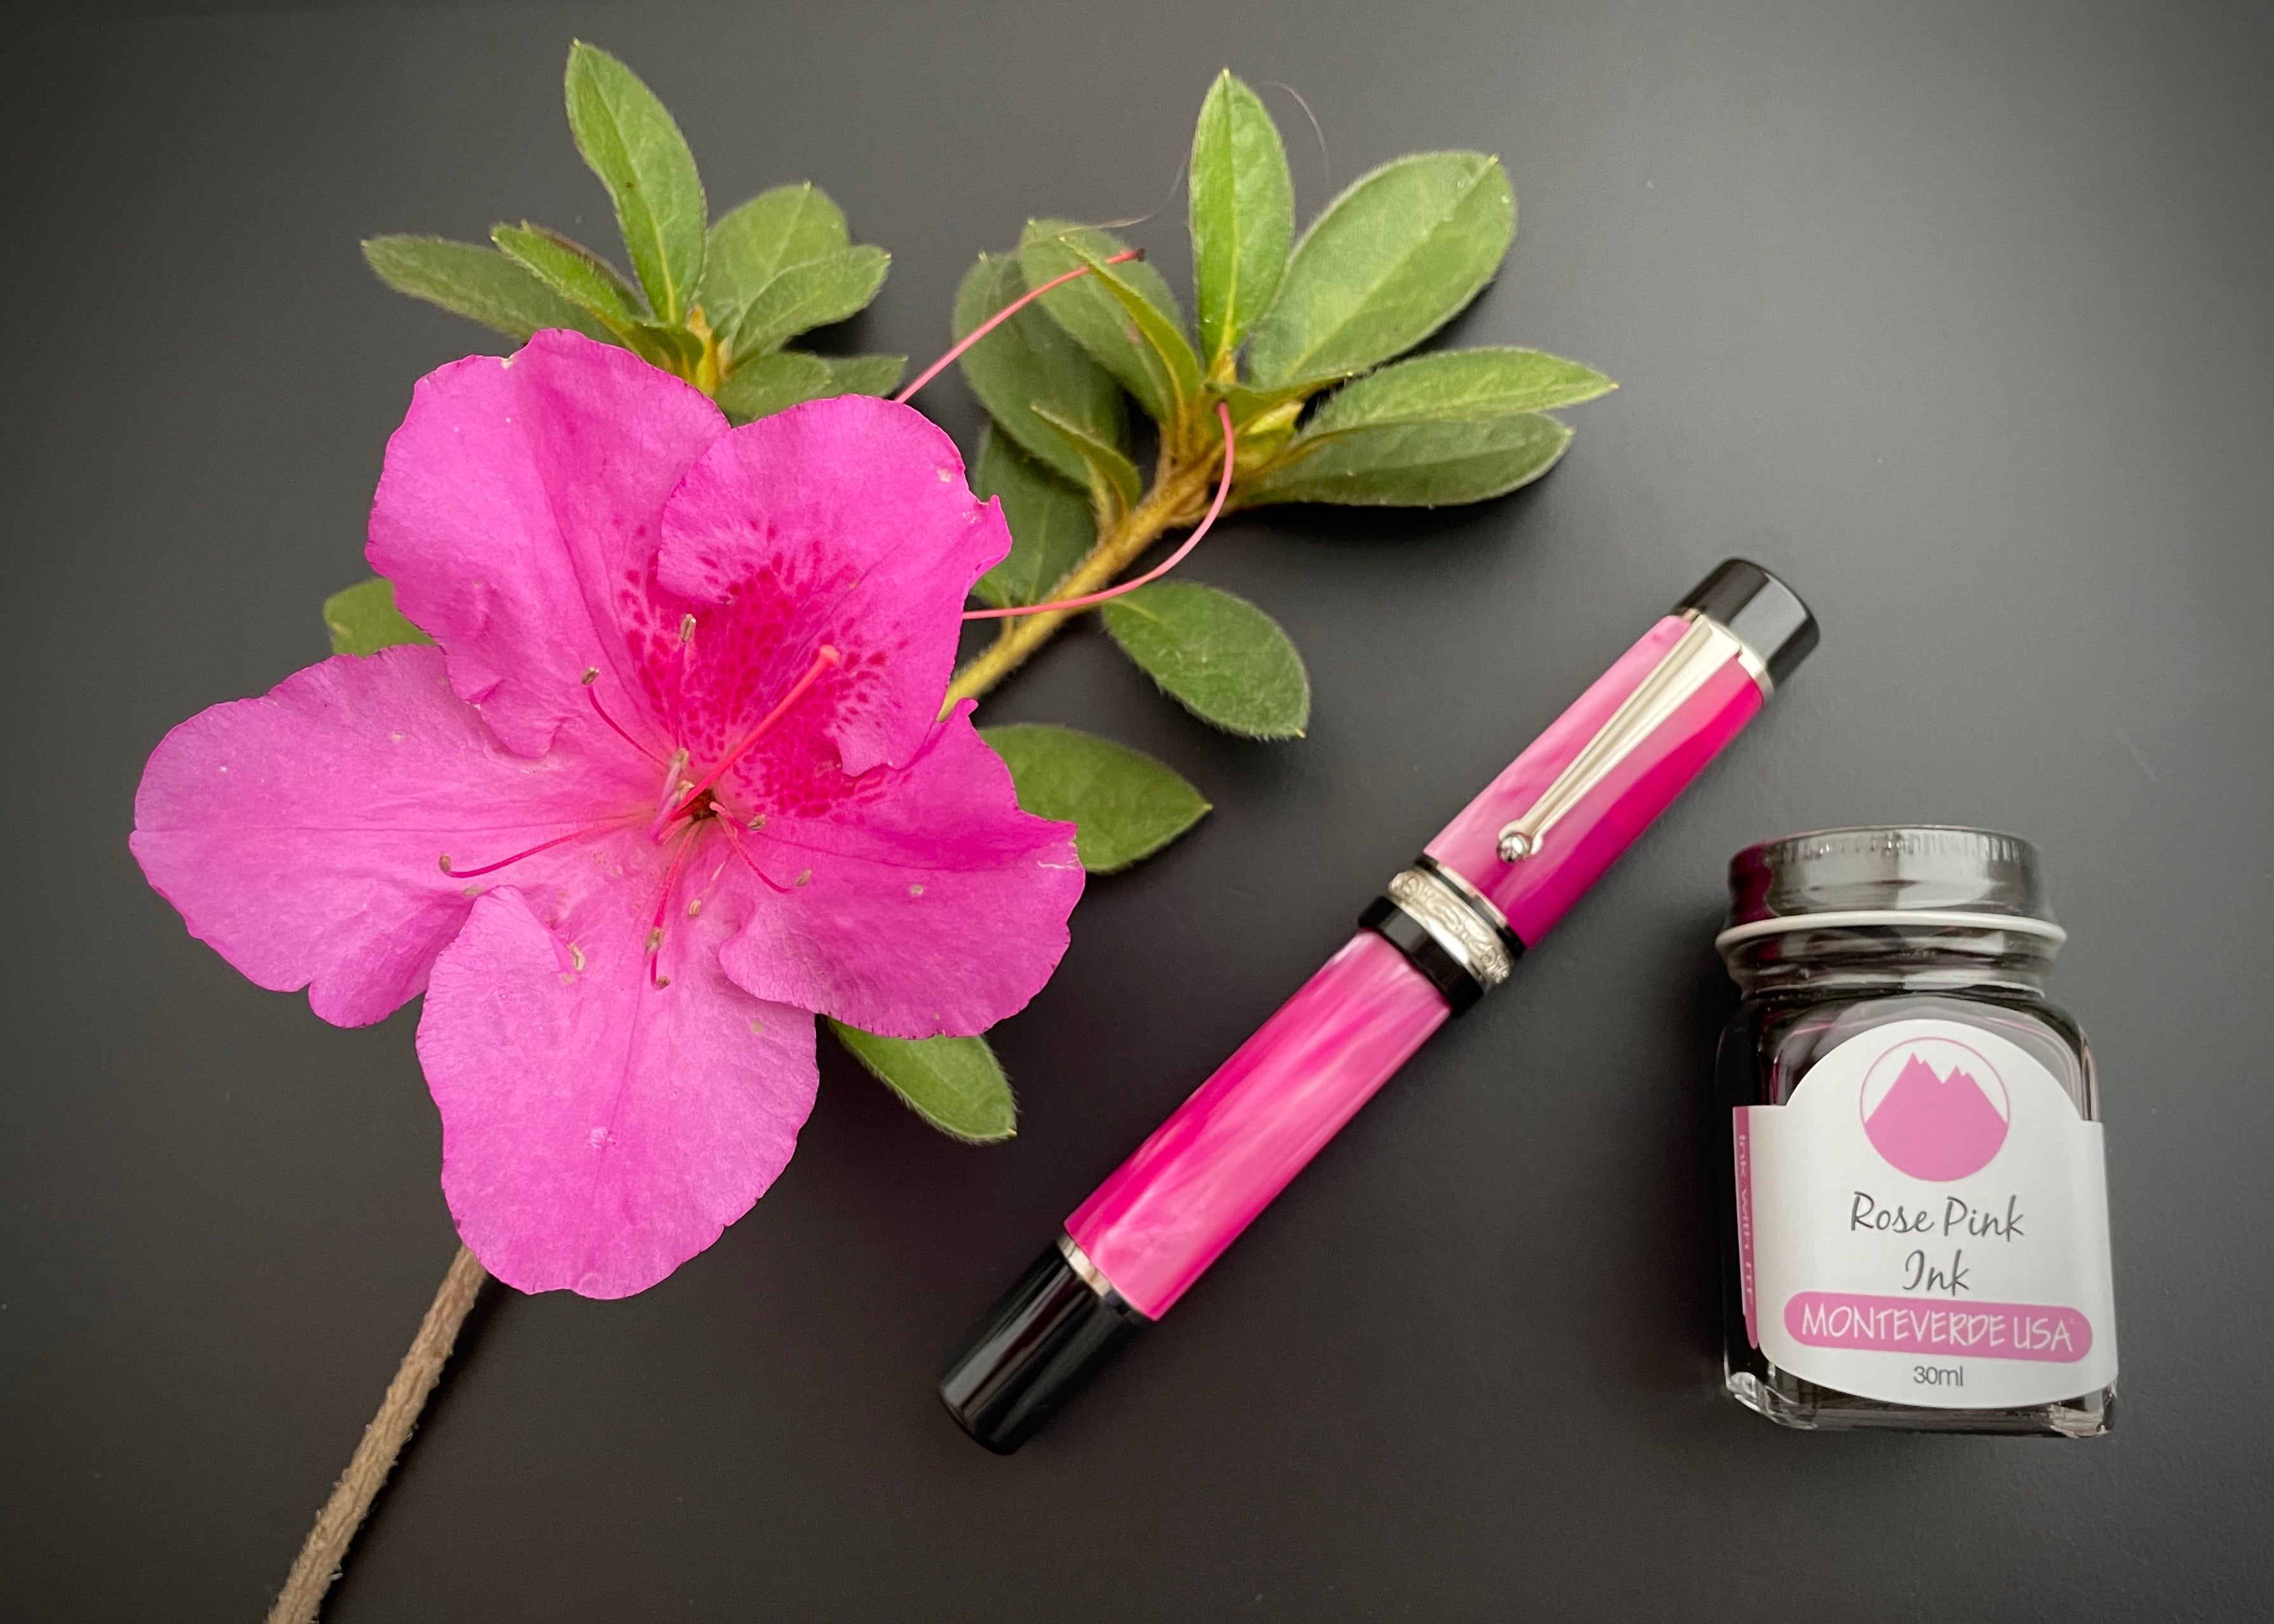 Delta DV Original Rosa Fountain Pen - Pink - Pen Boutique Exclusive-Pen Boutique Ltd